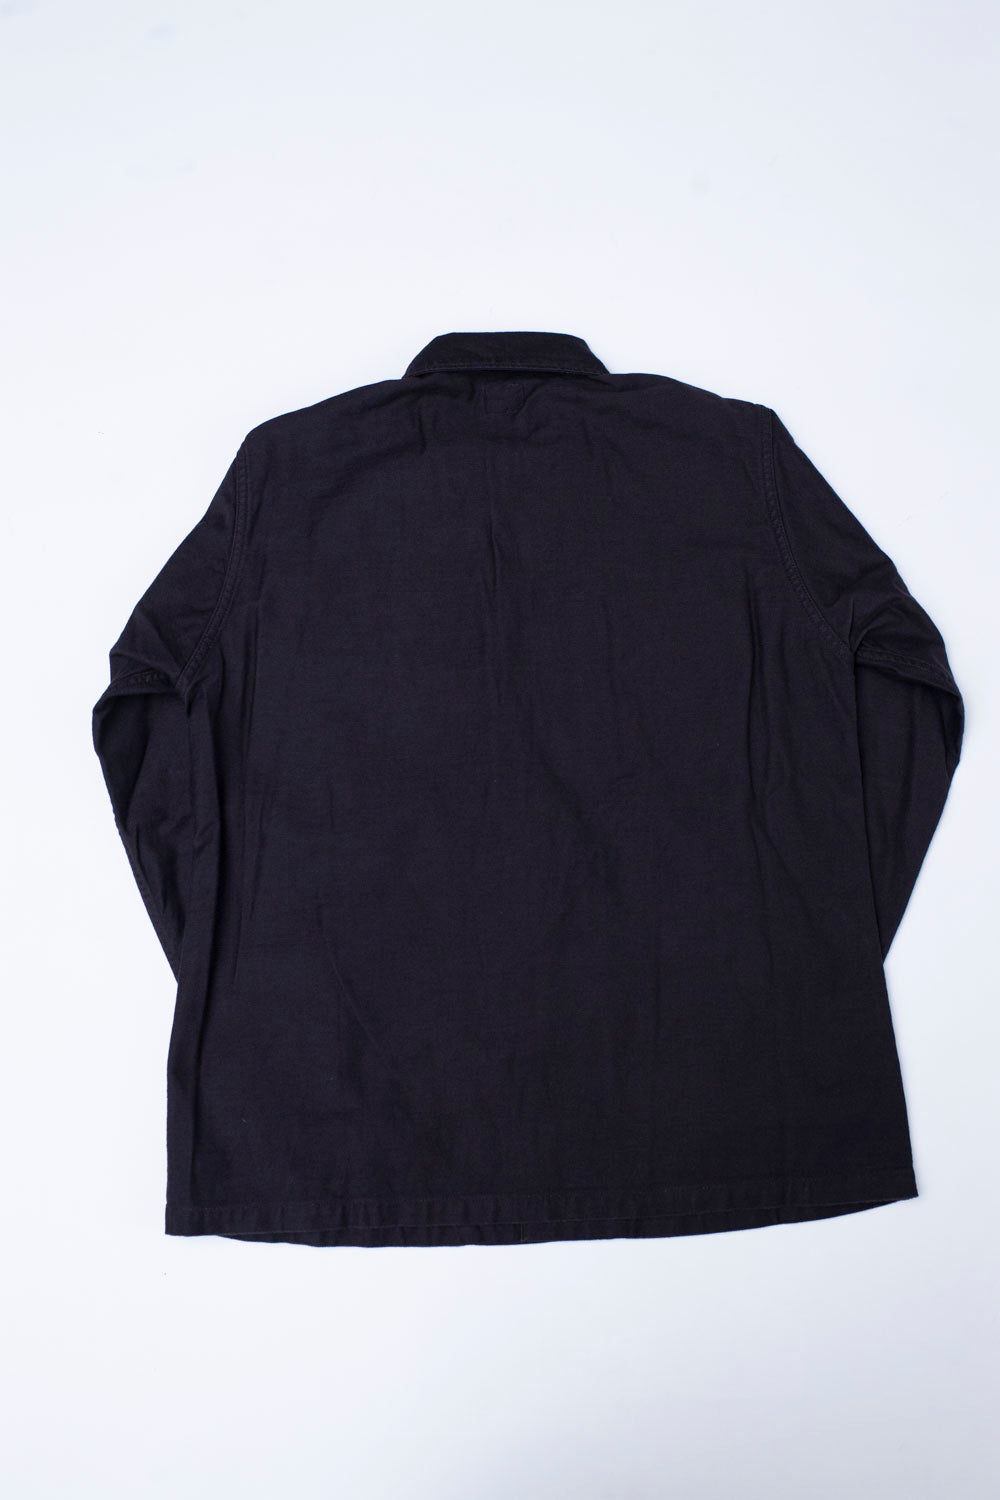 03-8045-61K - Fatigue Shirt Reverse Sateen - Black